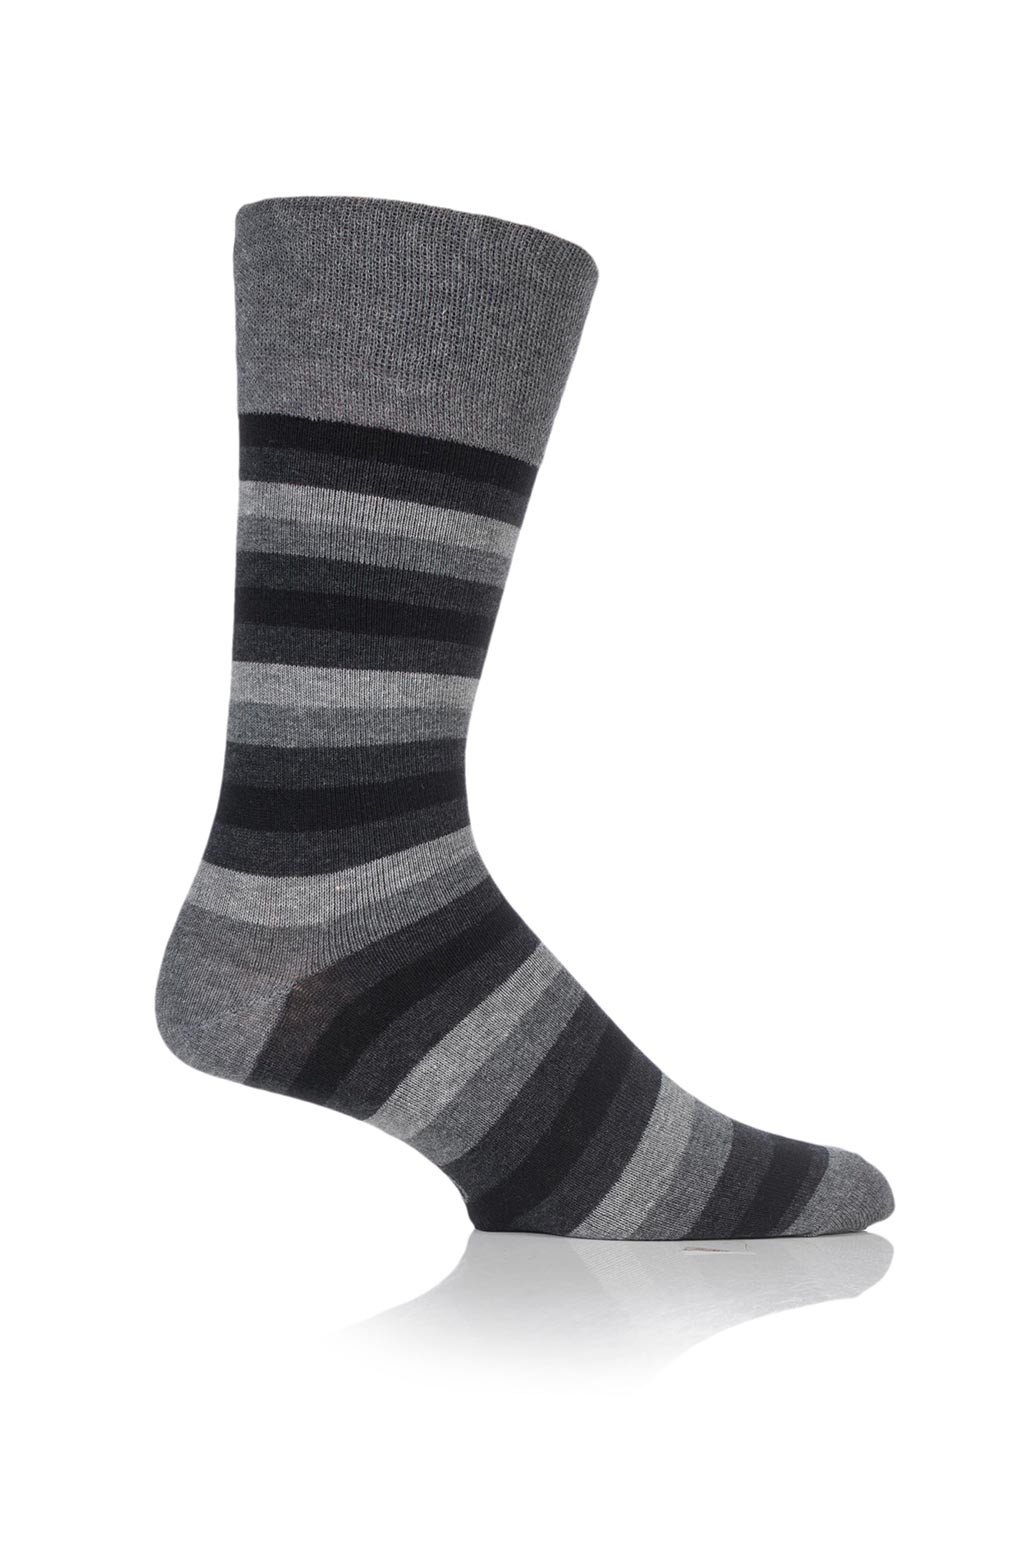 https://sockbuy.com/cdn/shop/products/socks-men-s-monochrome-stripe-socks-3-pair-pack-3_1024x.jpg?v=1479847058